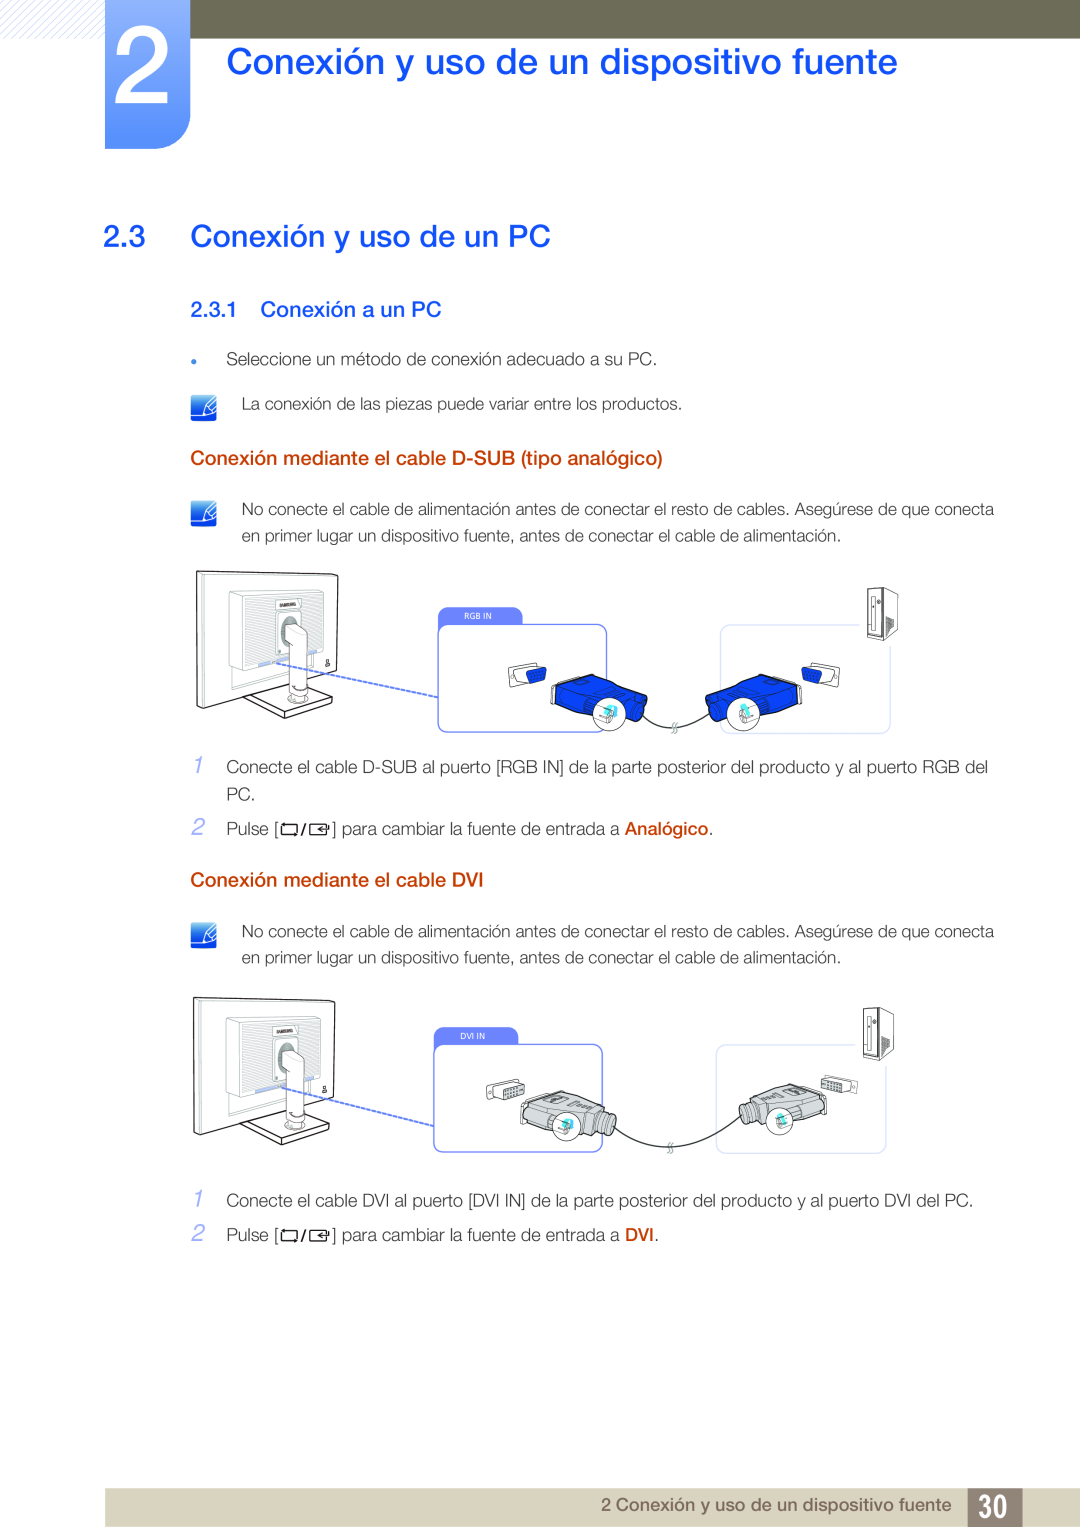 Samsung LS27C45KBSU/EN, LS22C45KMSV/EN Conexión y uso de un PC, Conexión a un PC, Conexión y uso de un dispositivo fuente 